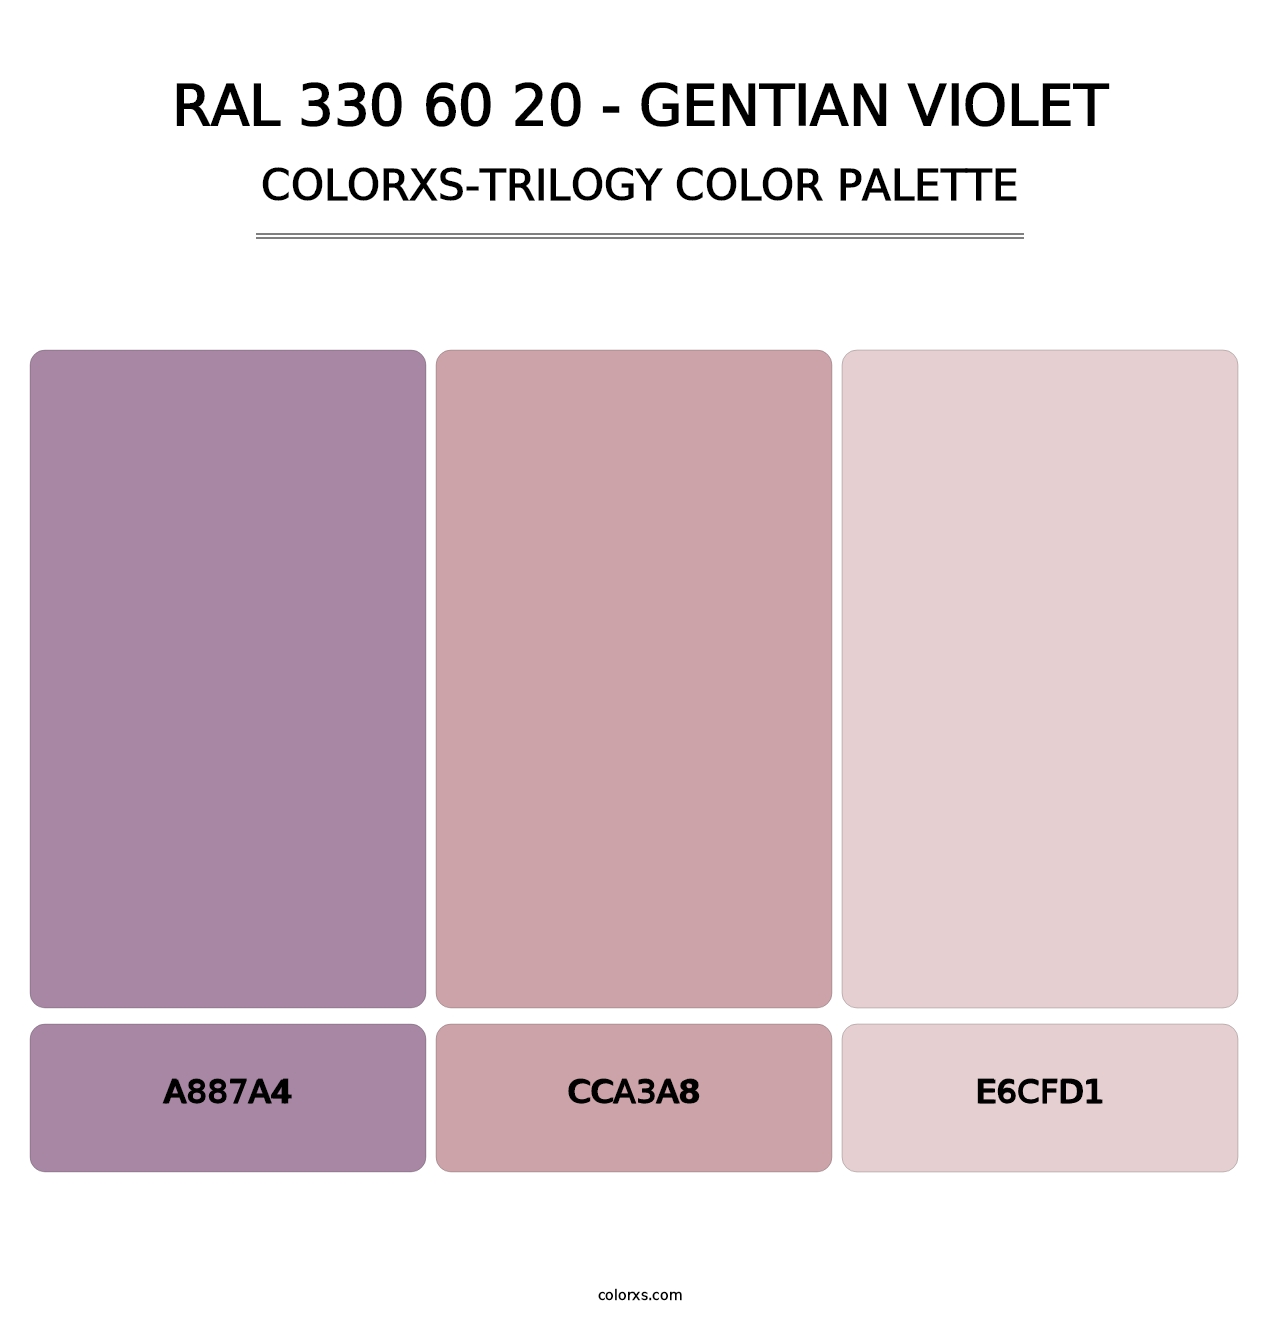 RAL 330 60 20 - Gentian Violet - Colorxs Trilogy Palette